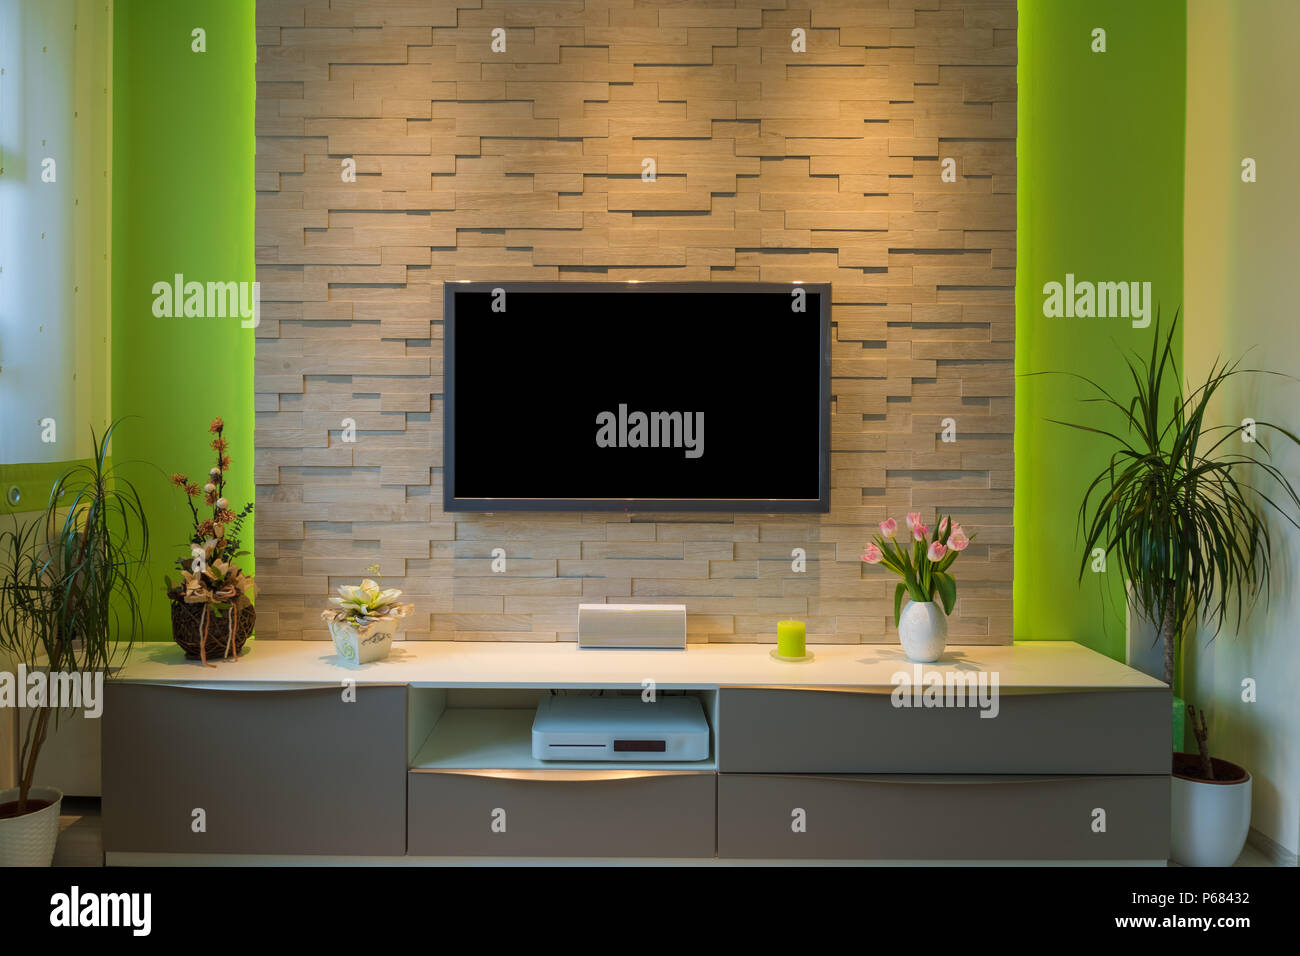 Modernes Wohnzimmer Interieur-tv auf Wand mit schwarzem Bildschirm und Umgebungslicht montiert. Stockfoto